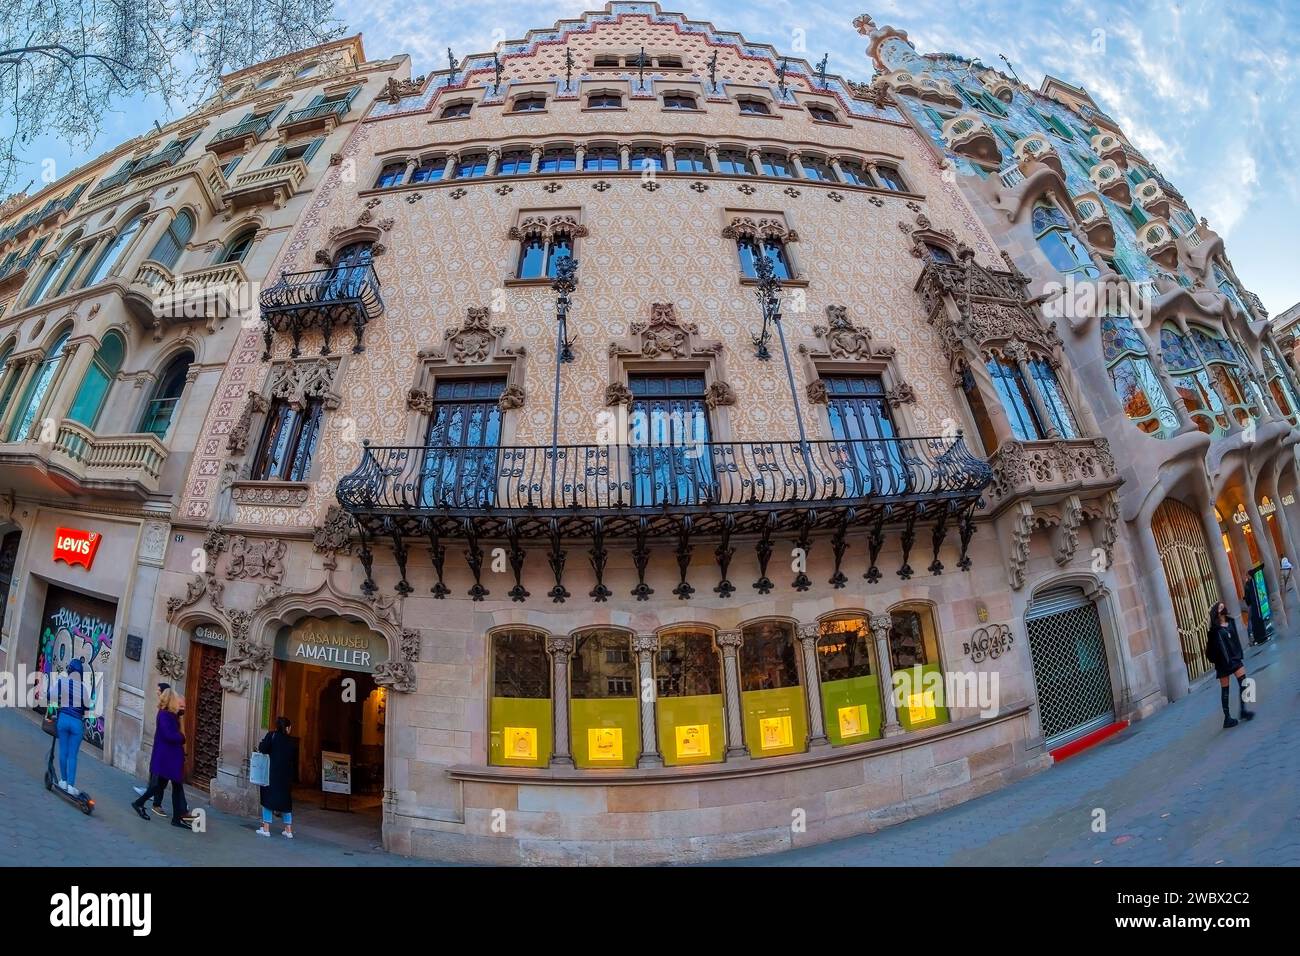 BARCELONE, ESPAGNE - 27 FÉVRIER 2022 : façade de la Casa Amatller conçue par l'architecte catalan Josep Puig i Cadafalch. Banque D'Images